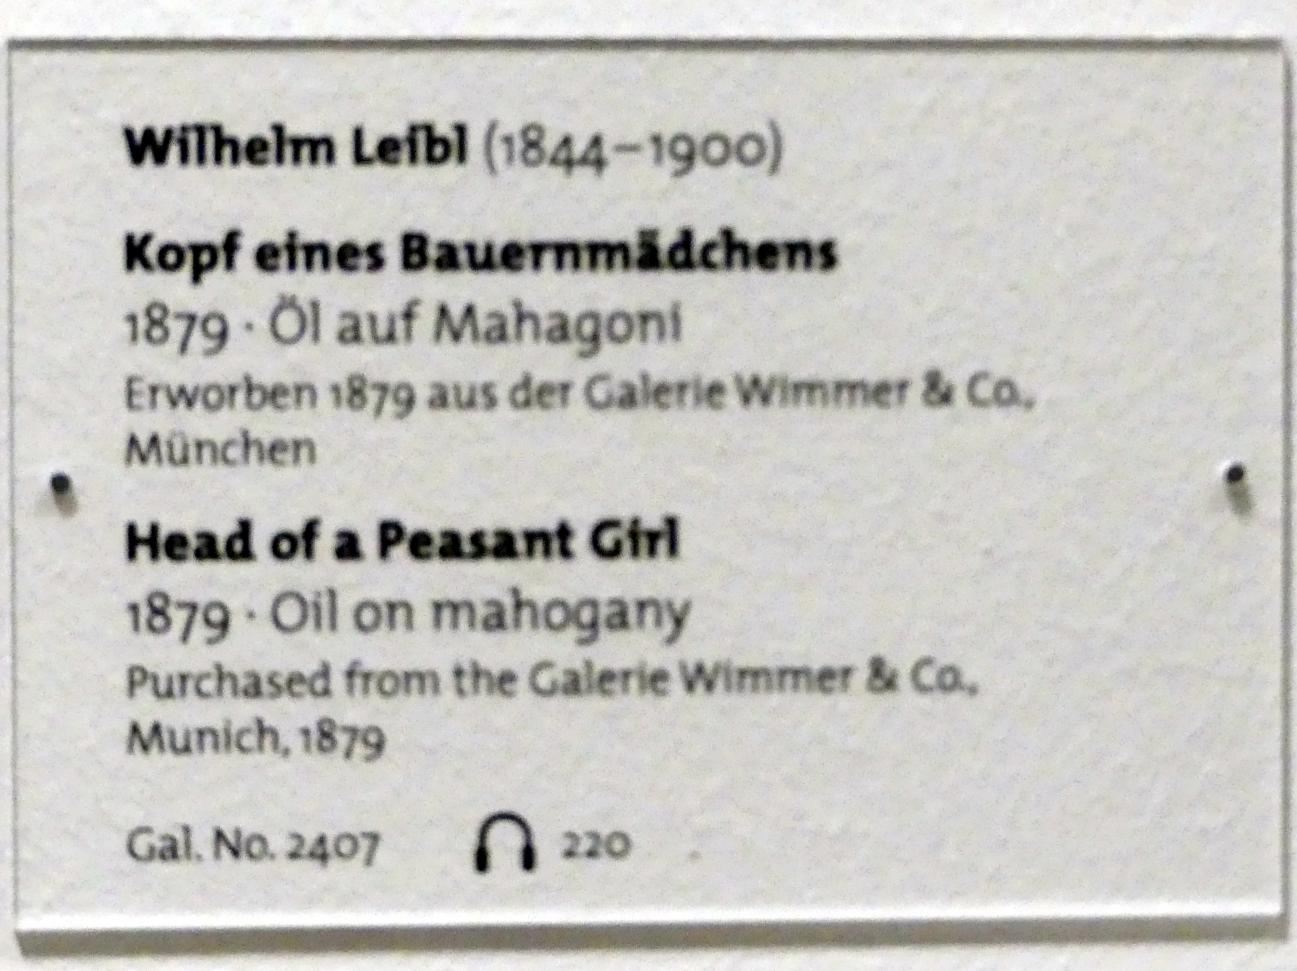 Wilhelm Leibl (1864–1898), Kopf eines Bauernmädchens, Dresden, Albertinum, Galerie Neue Meister, 2. Obergeschoss, Saal 7, 1879, Bild 2/2